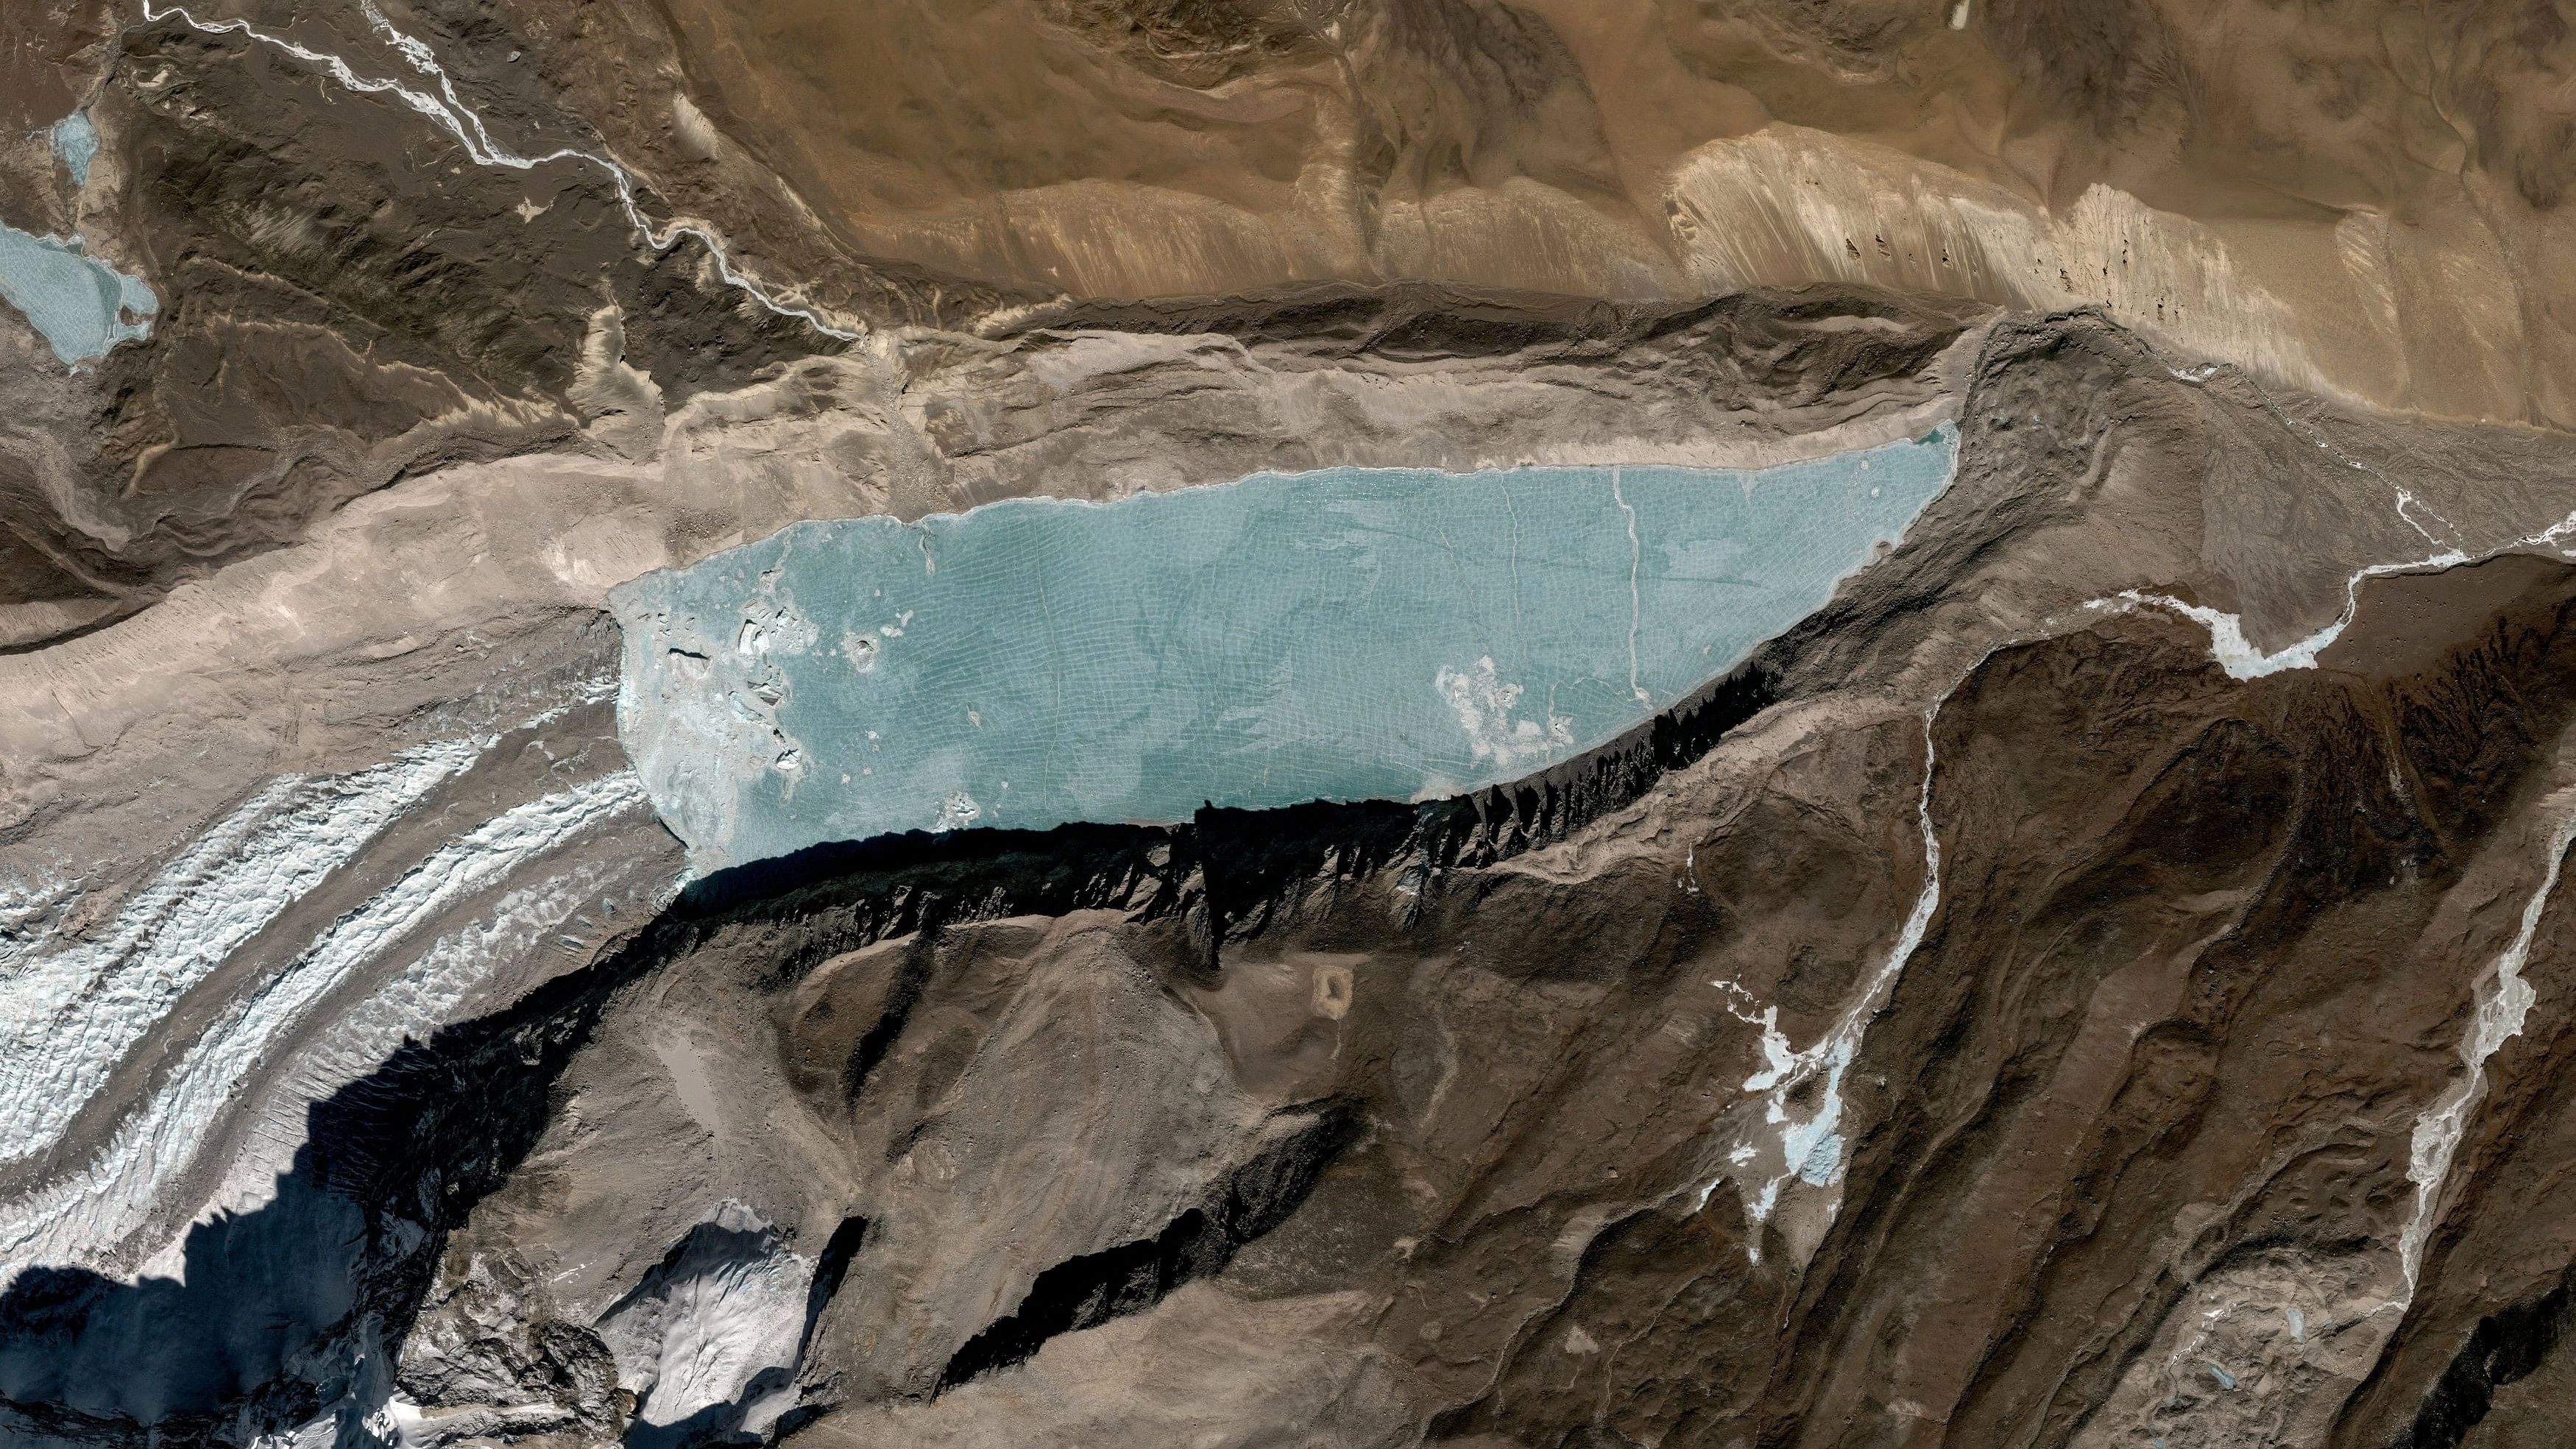 <div class="paragraphs"><p>Representative image of a glacial lake.</p></div>